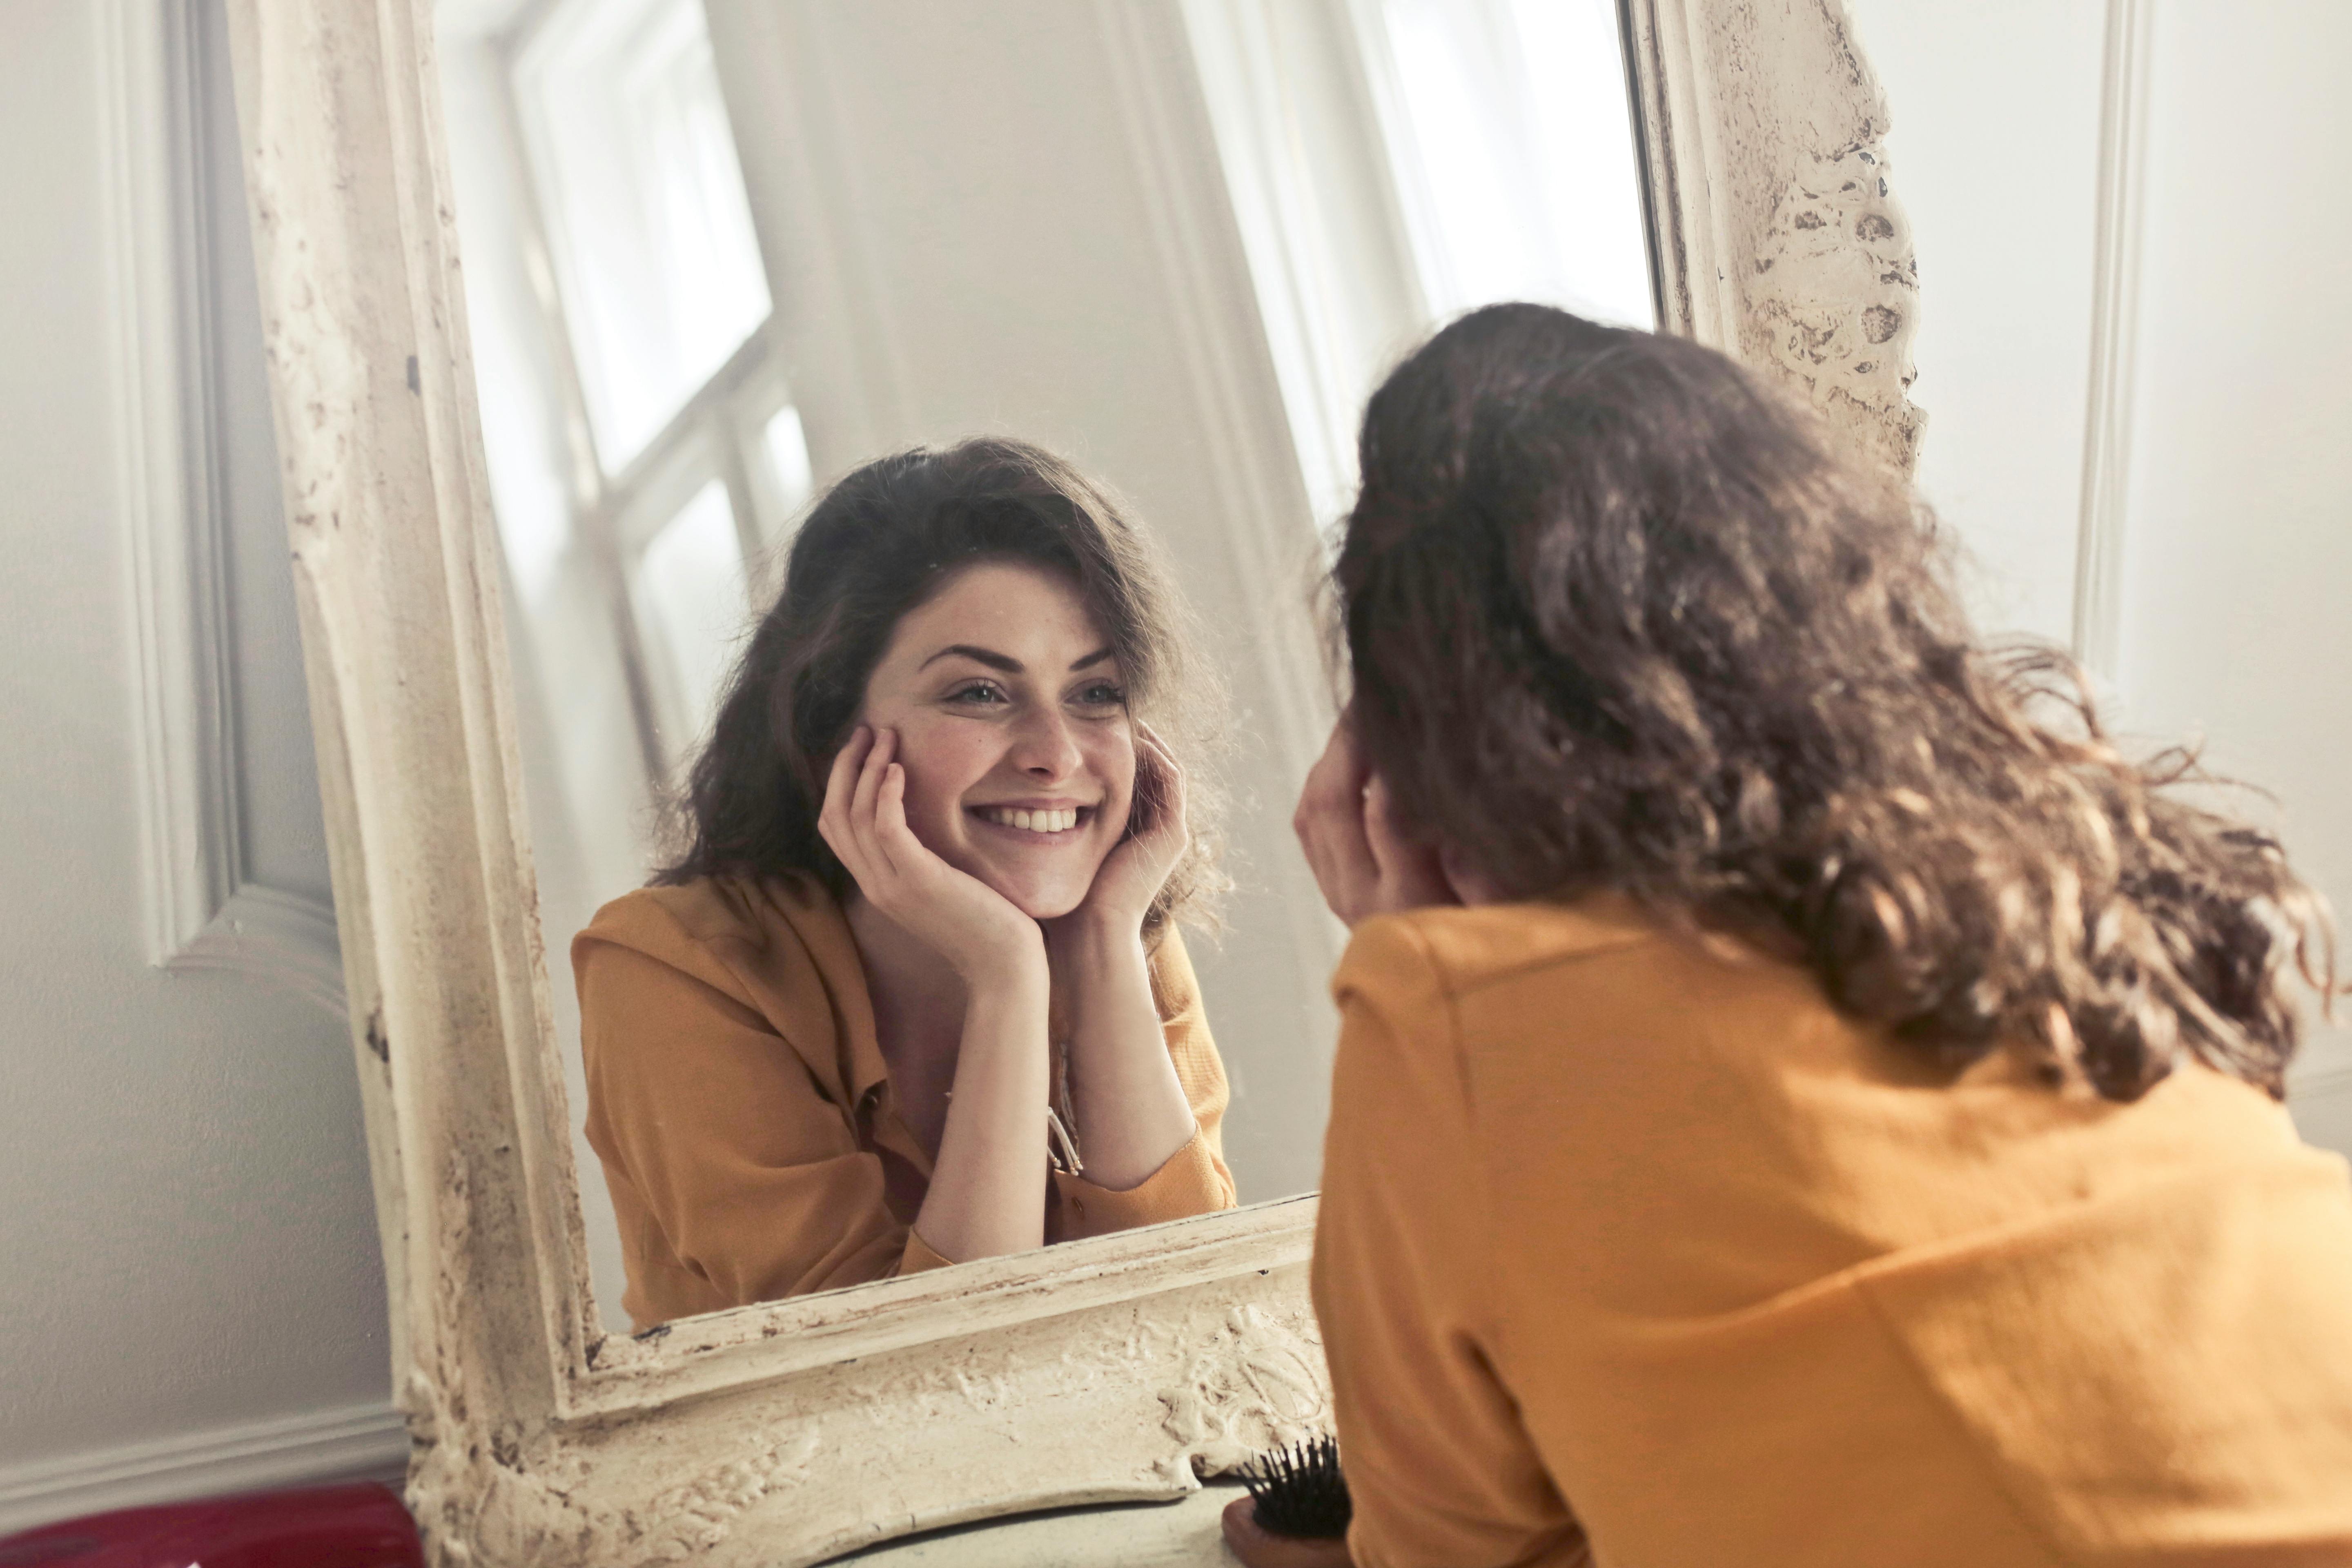 Une femme heureuse qui sourit dans le miroir | Source : Pexels